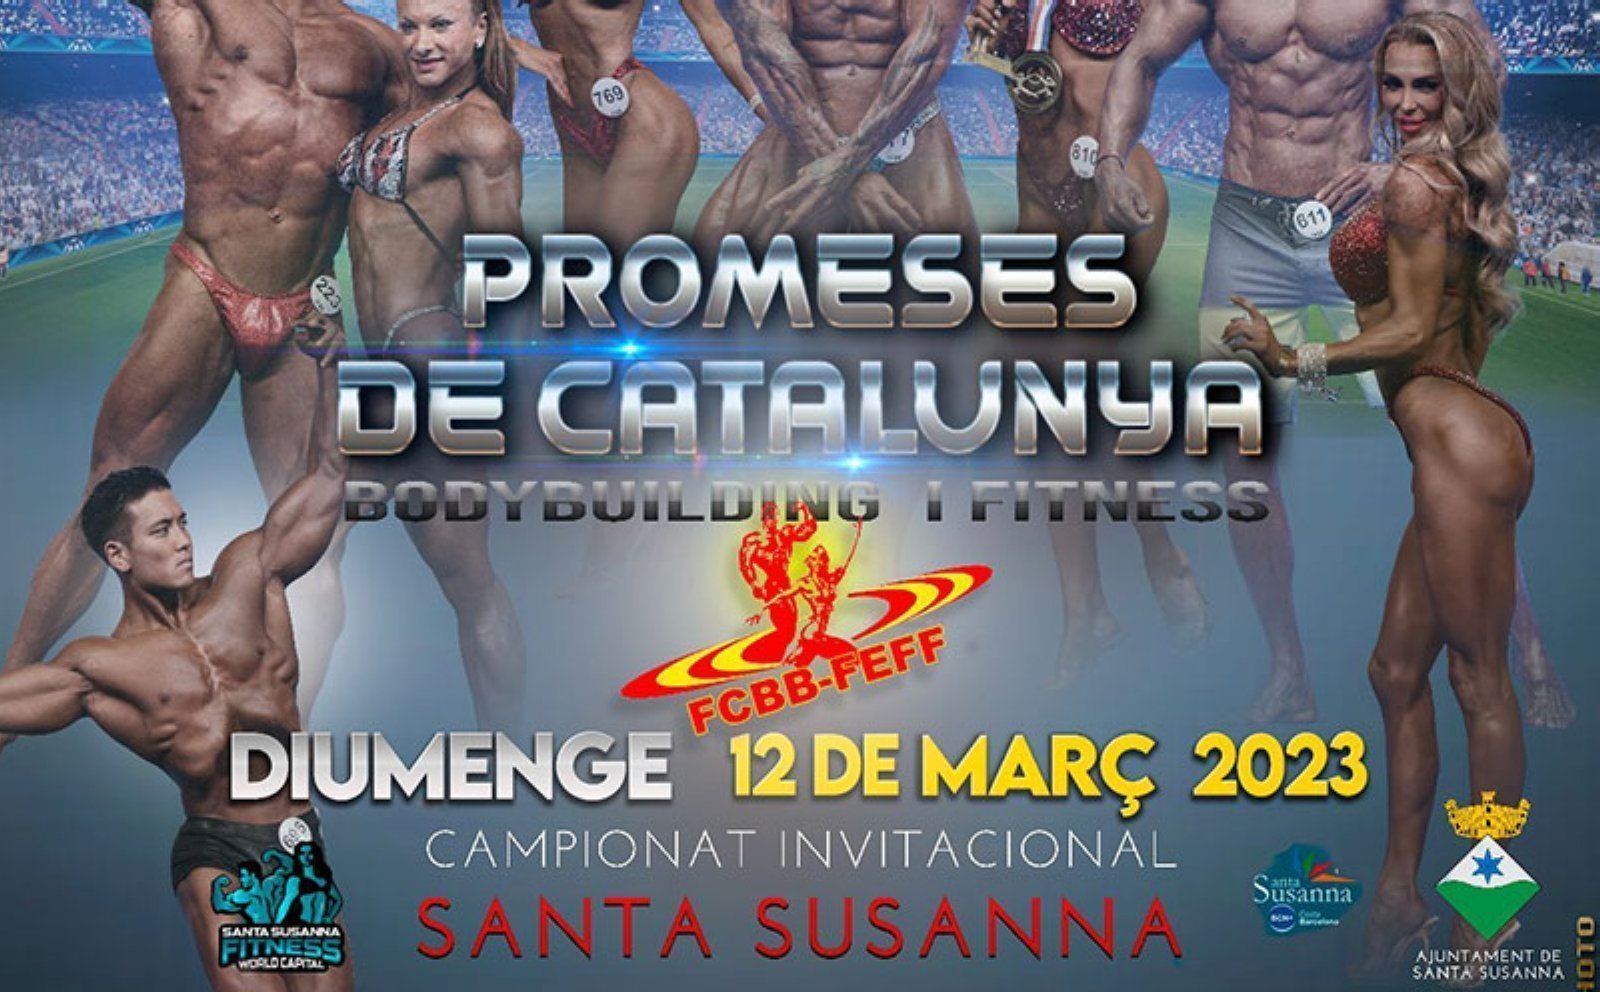 El Campeonato Invitacional Promesas de Cataluña 2023